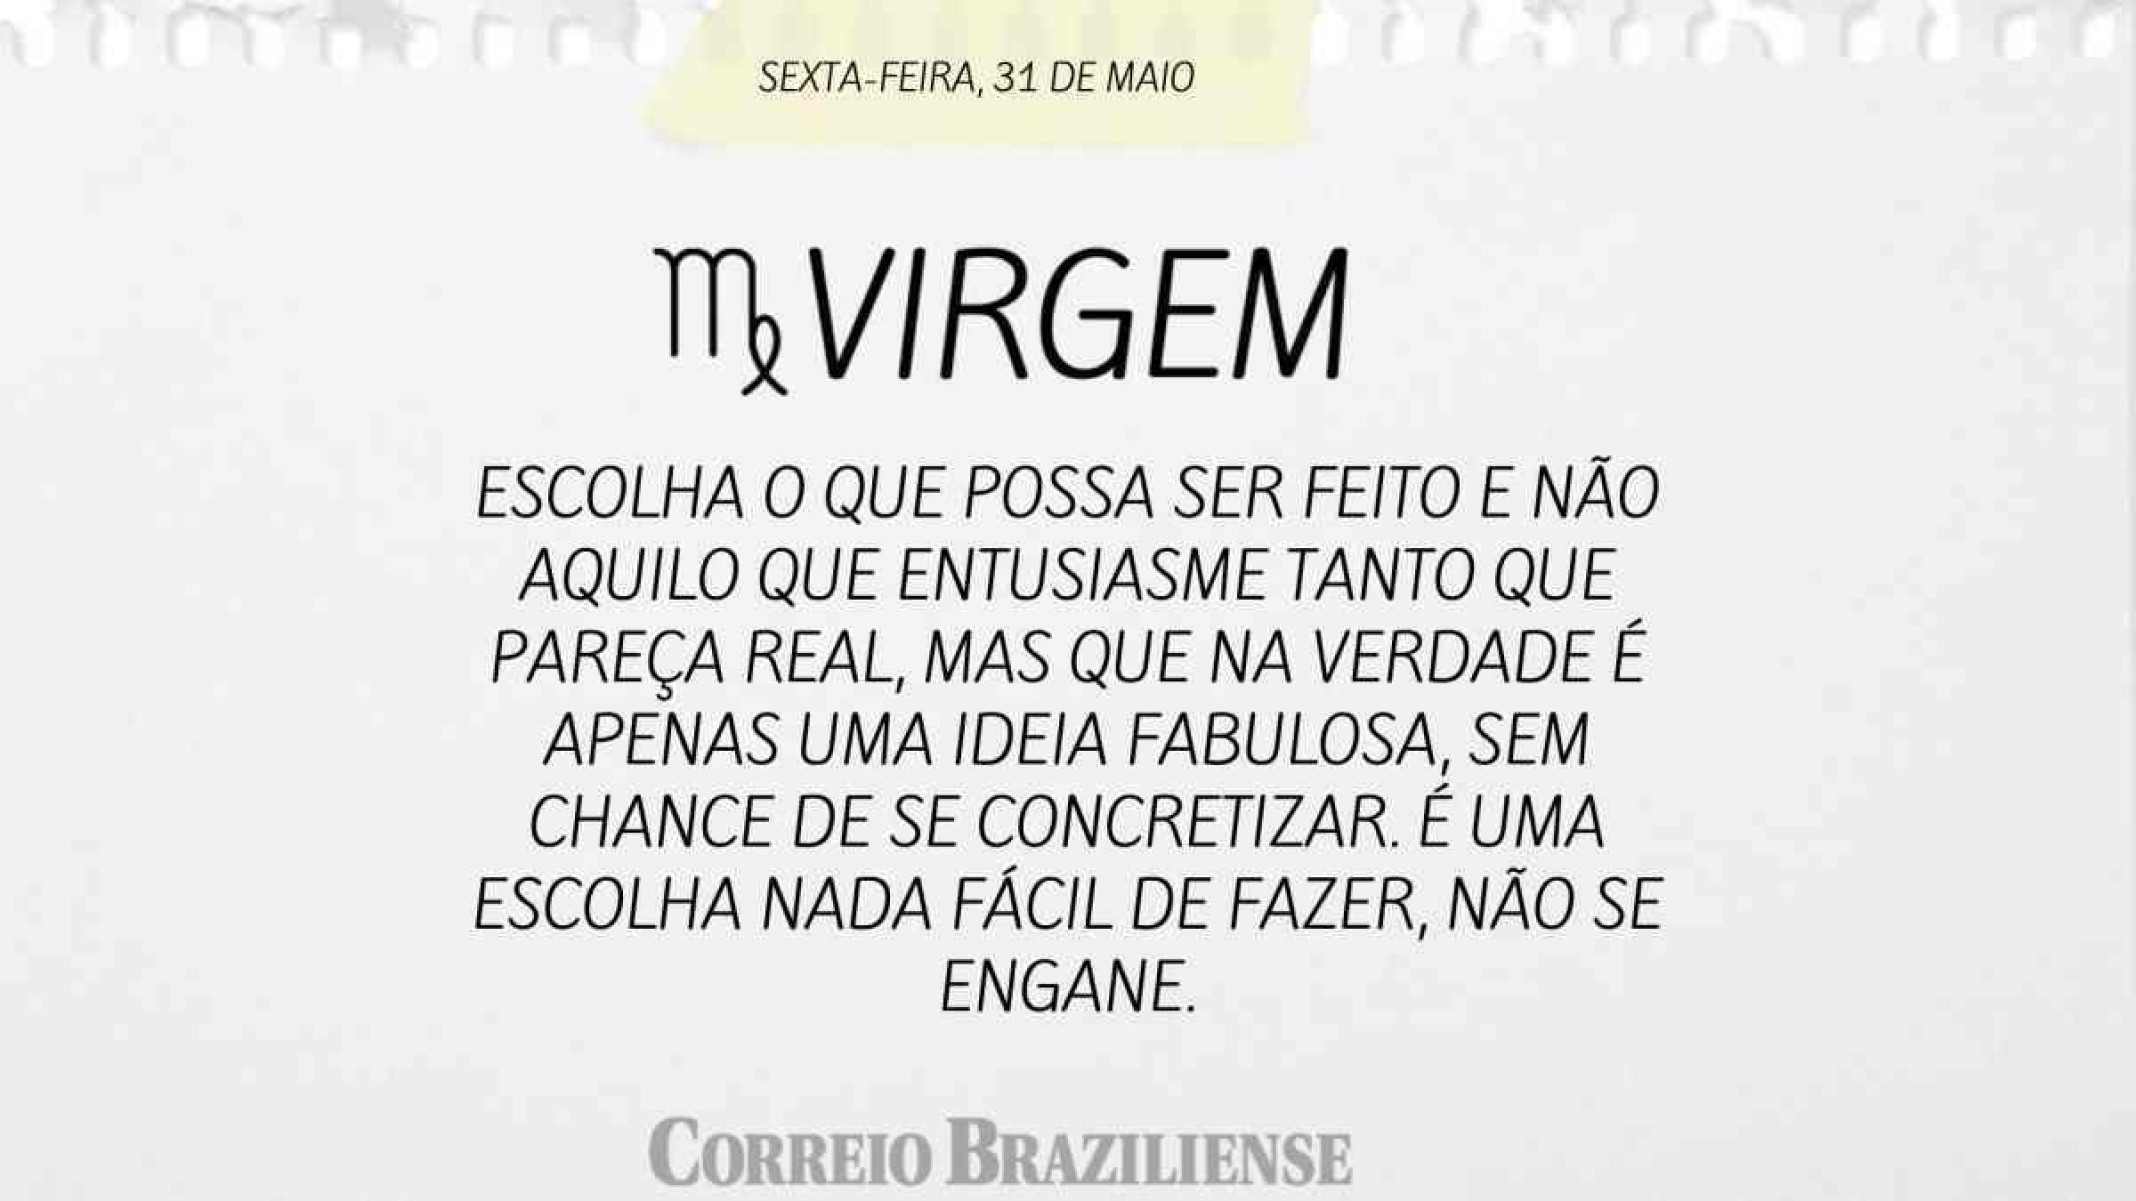 VIRGEM | 31 DE MAIO